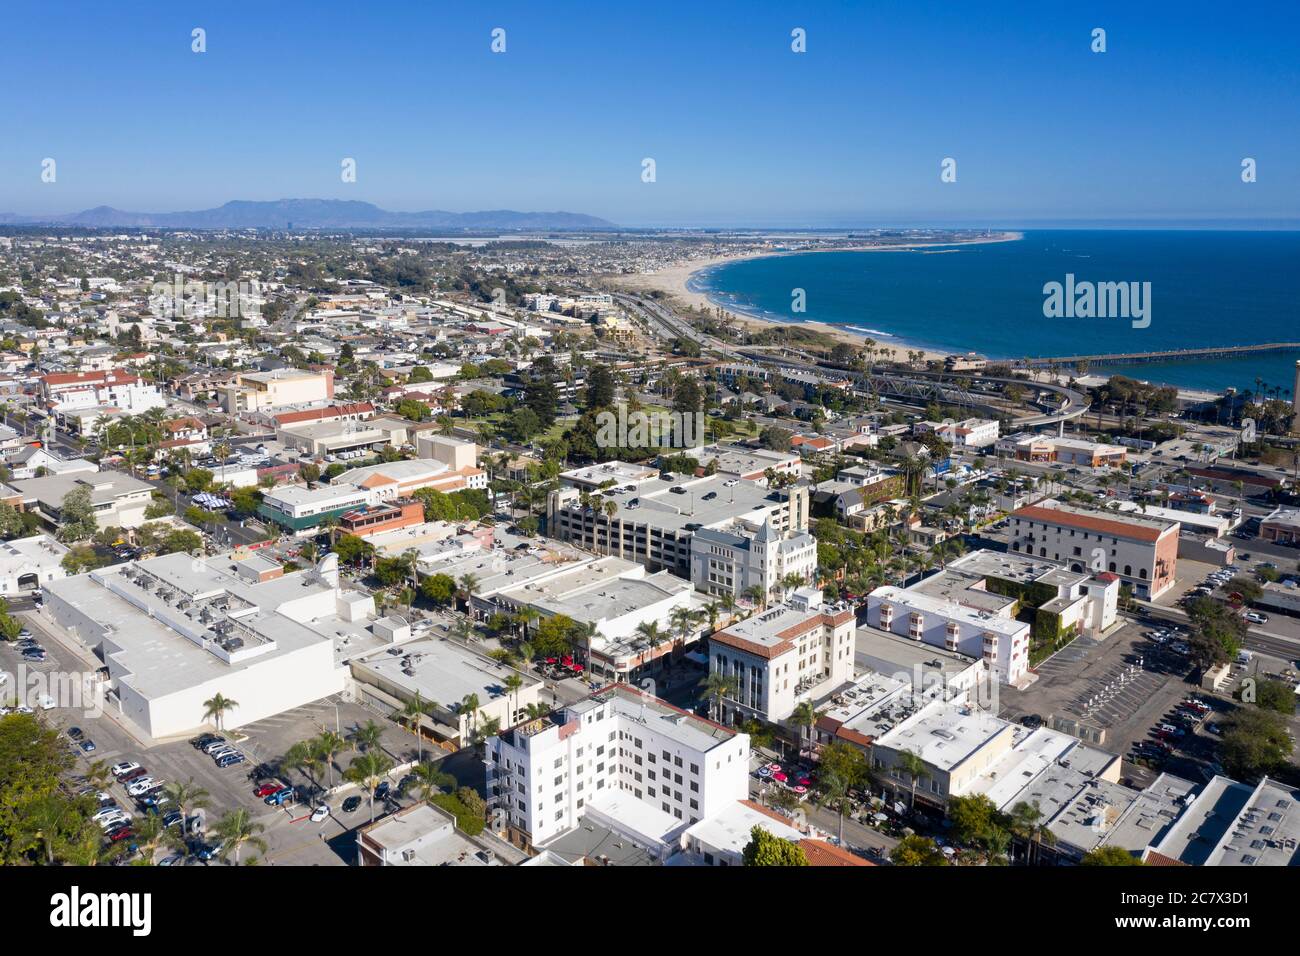 Vista aerea sul centro di Ventura, California, con la costa blu dell'Oceano Pacifico Foto Stock